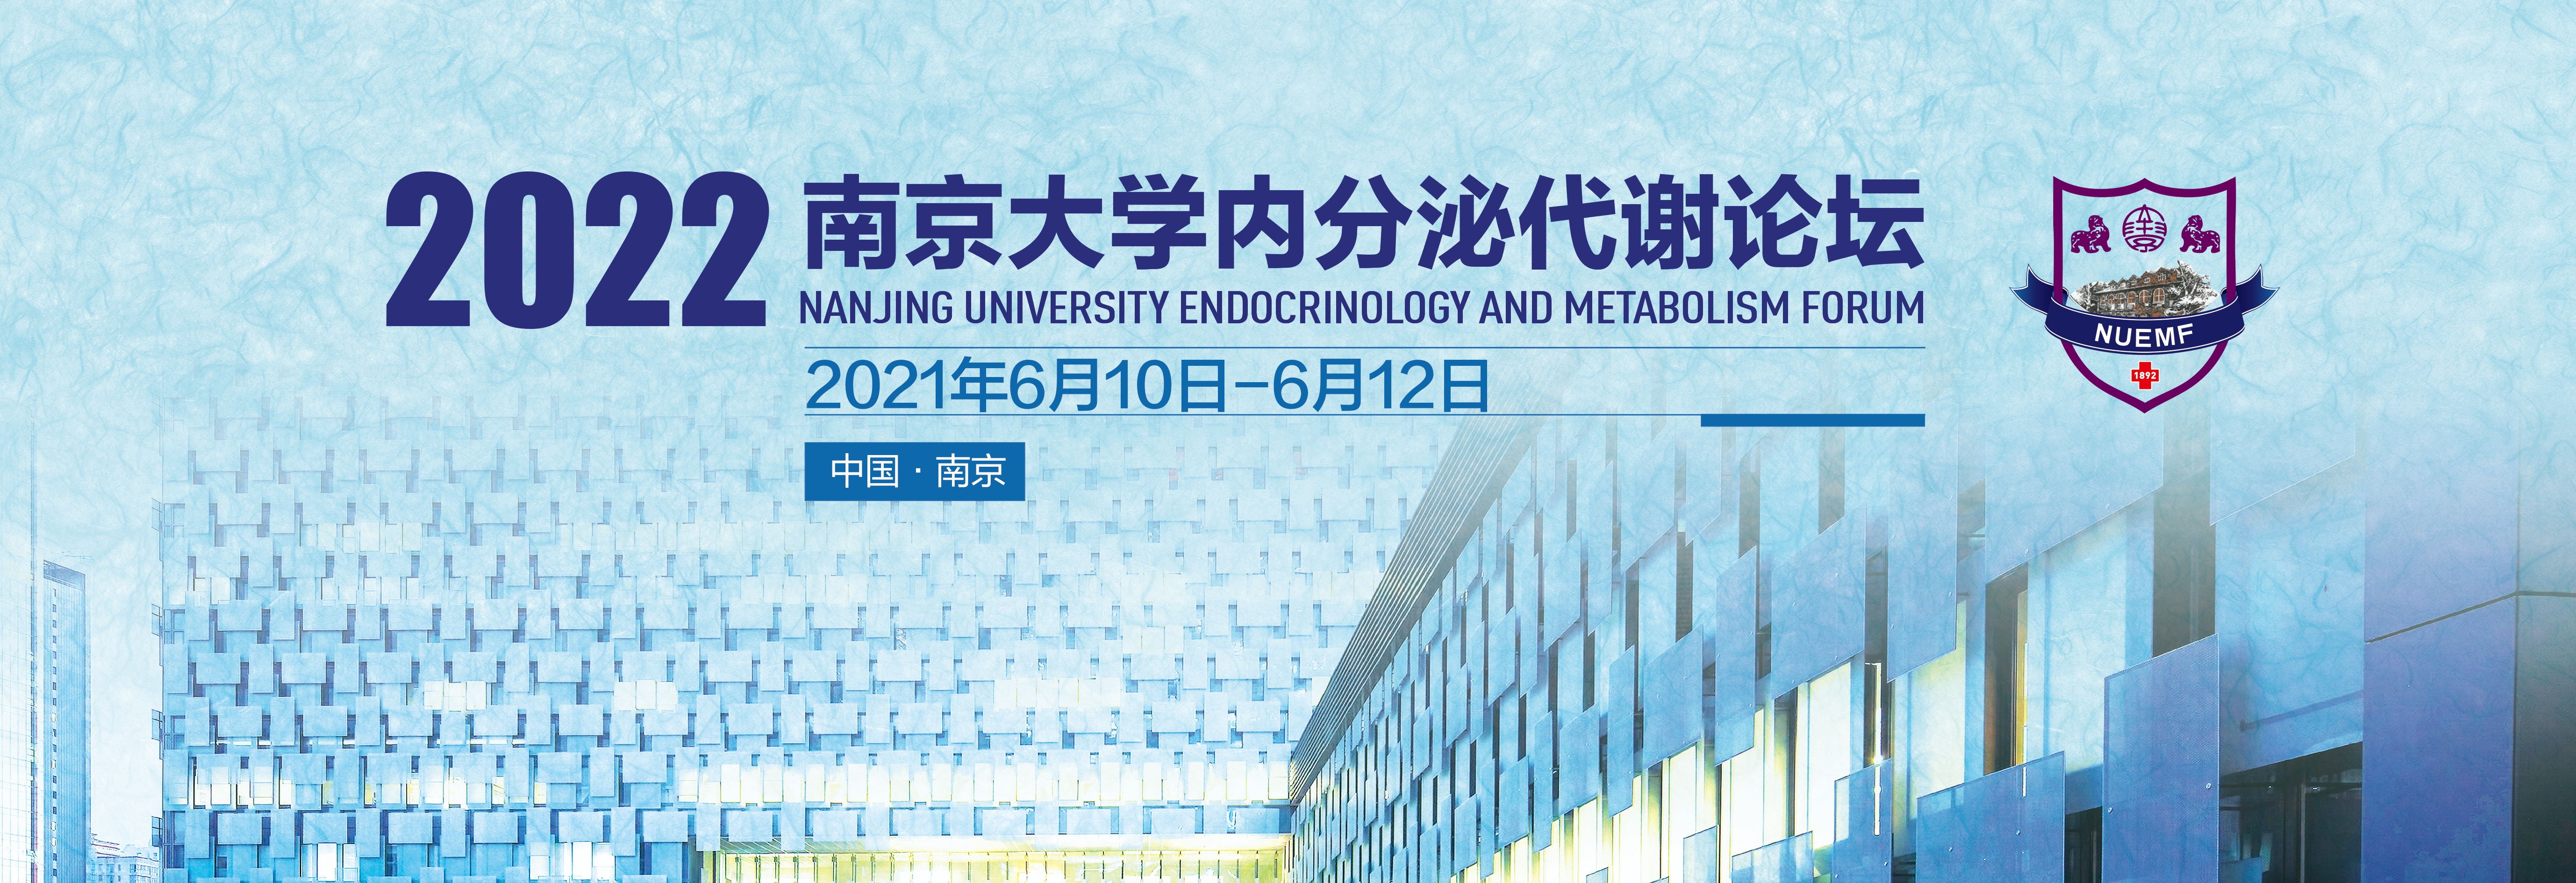 2022南京大学内分泌代谢论坛圆满落幕，糖吉医疗可内镜介入治疗创新成果收获众多专业好评